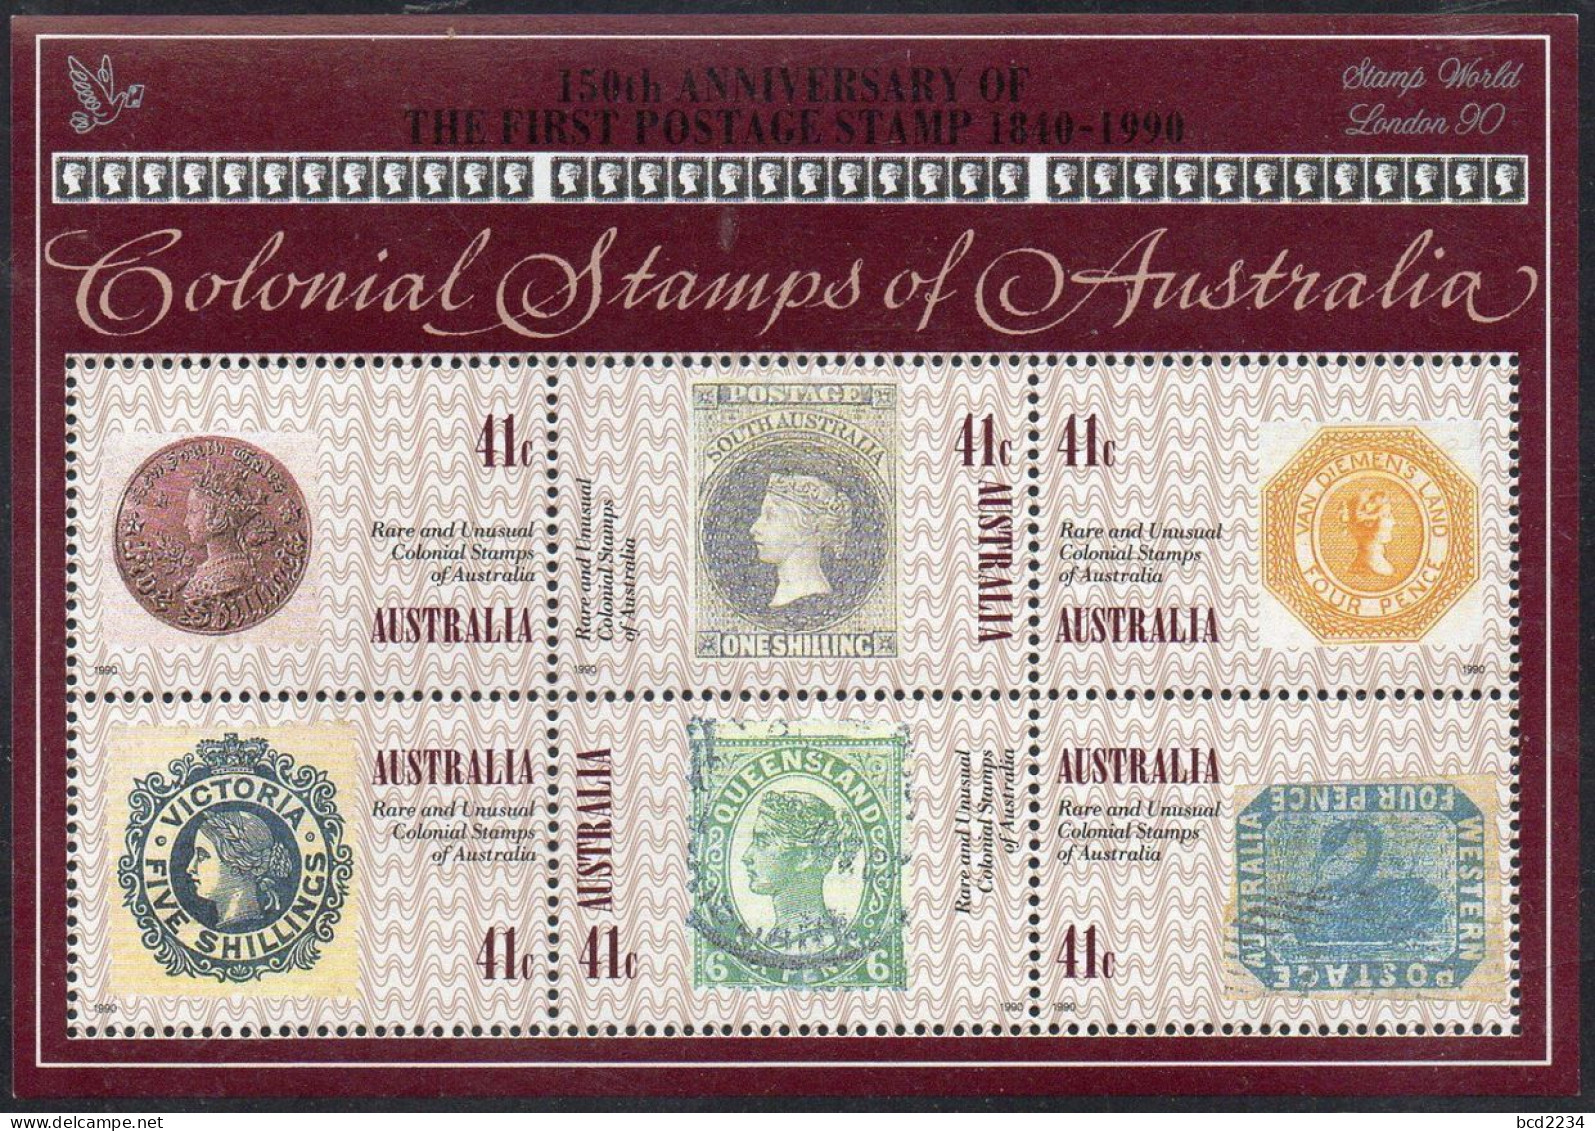 AUSTRALIA 1990 RARE & UNUSUAL COLONIAL STAMPS X5 + SILVER STAMP WORLD LONDON 90 OVERPRINT SG MS1253 Mi BL 10 MNH - Briefmarken Auf Briefmarken